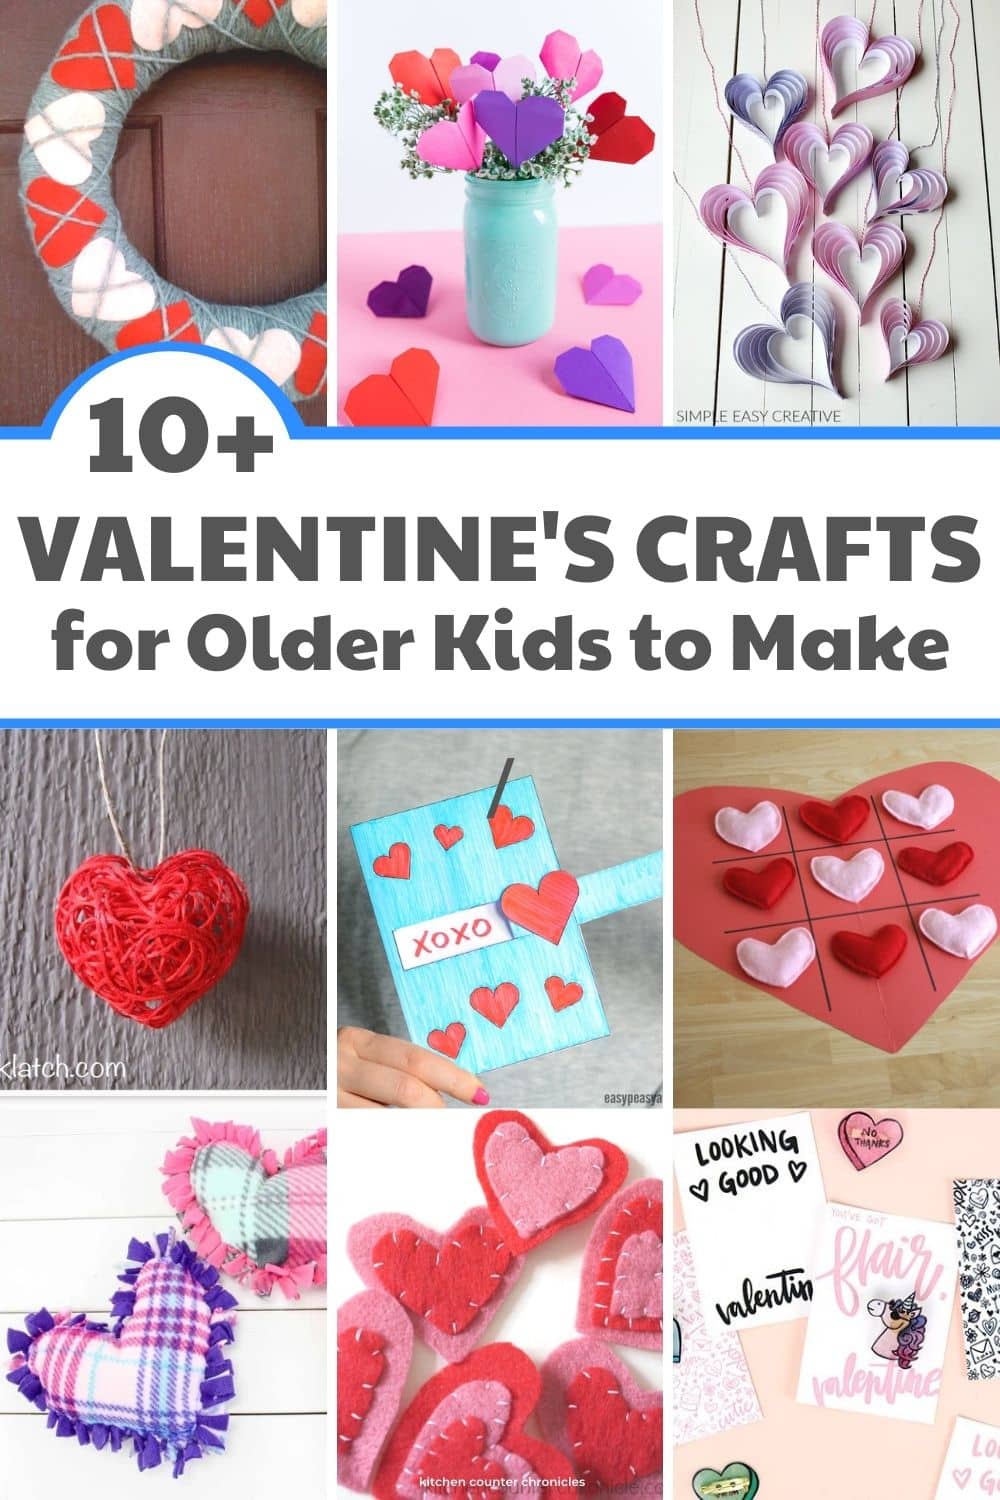 Valentines day crafts for older kids to make